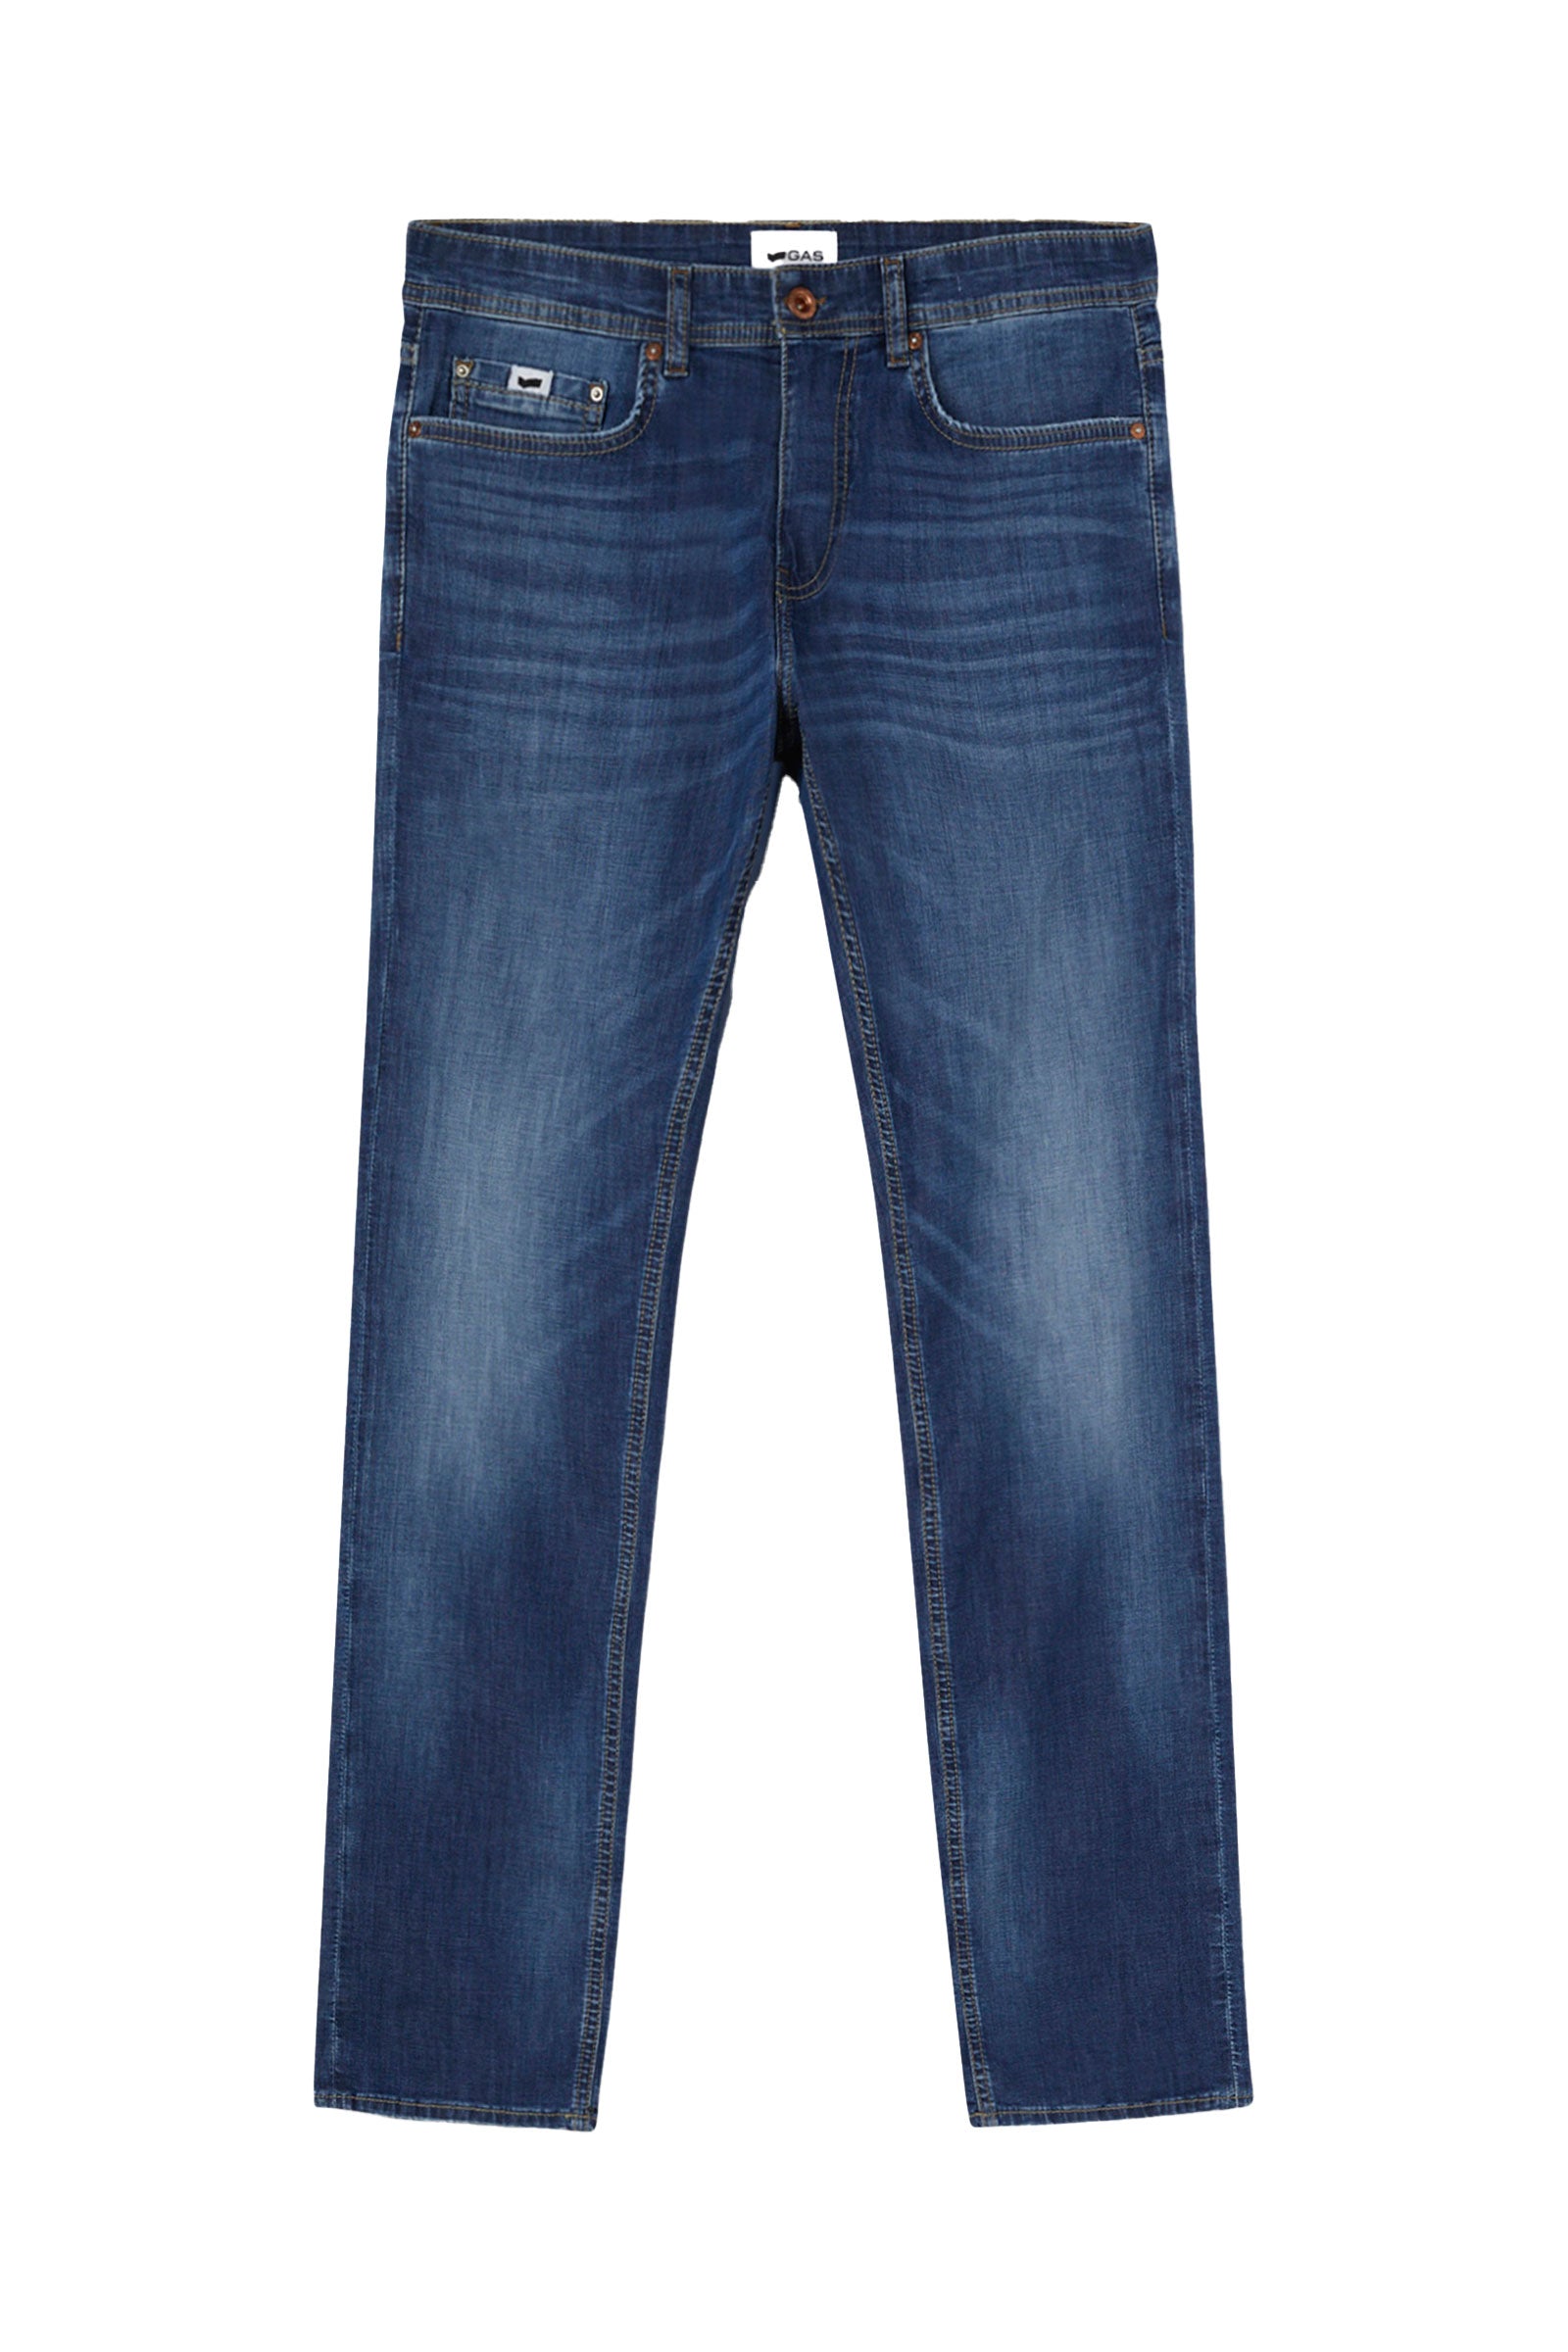 Morris Rev 5 Pocket in Dark Blue Medium Jeans GAS   